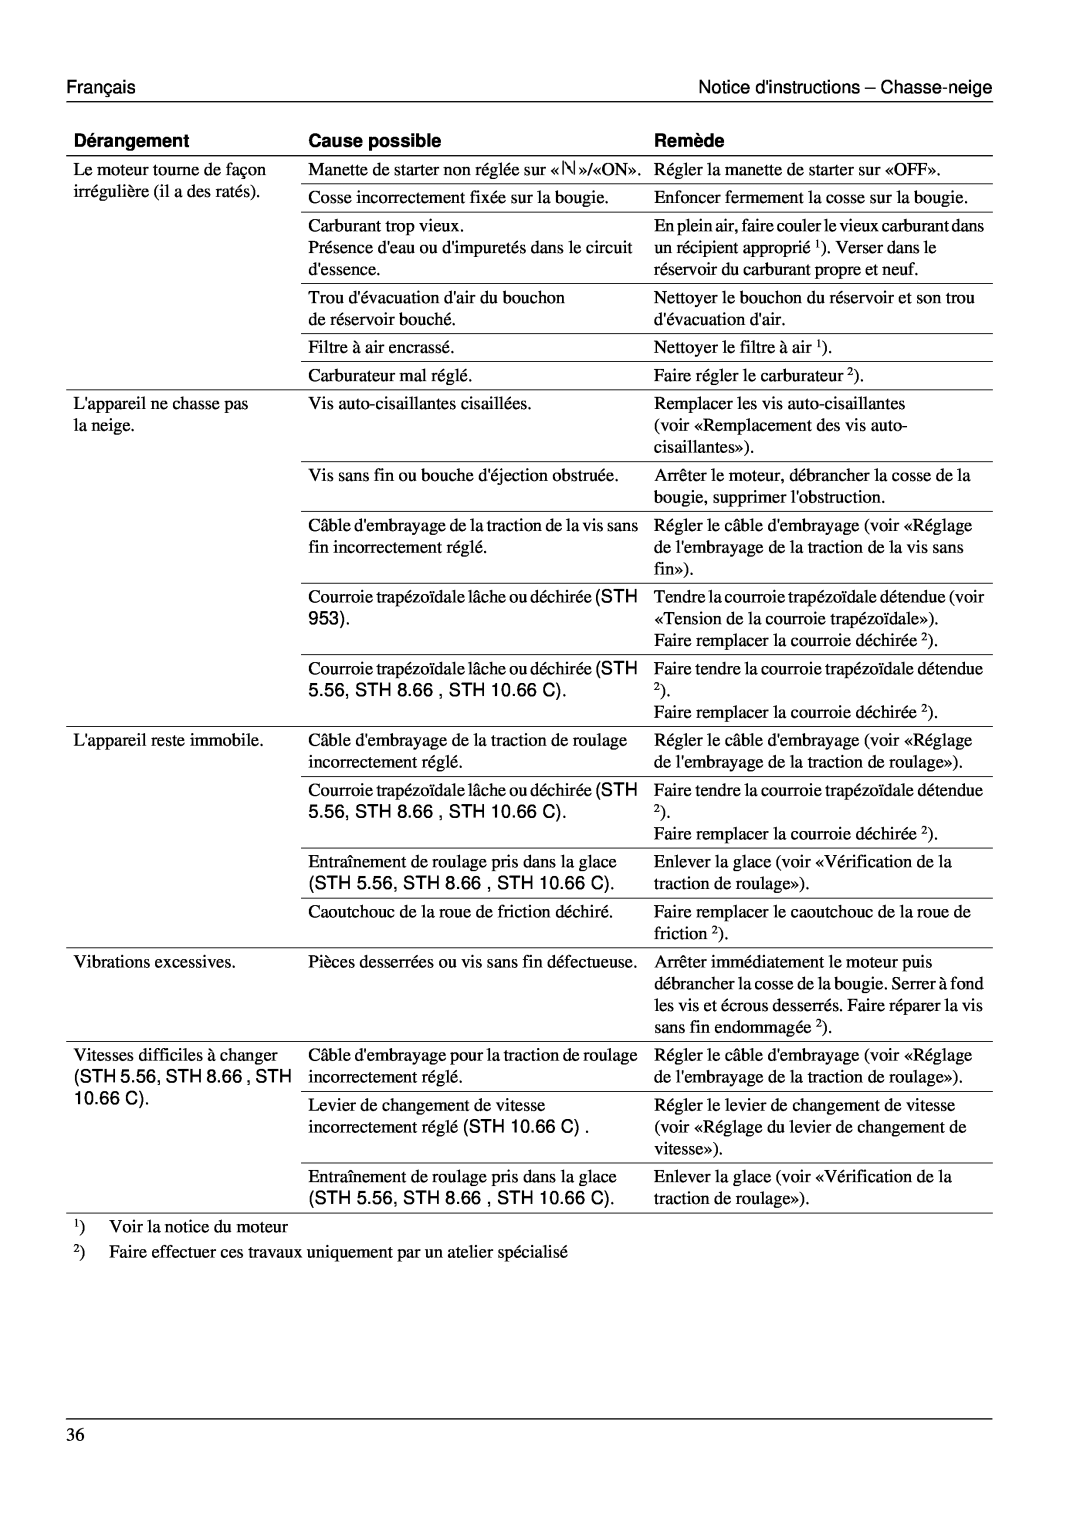 Karcher STH 953 manual Français, Notice dinstructions - Chasse-neige, Dérangement, Cause possible, Remède 